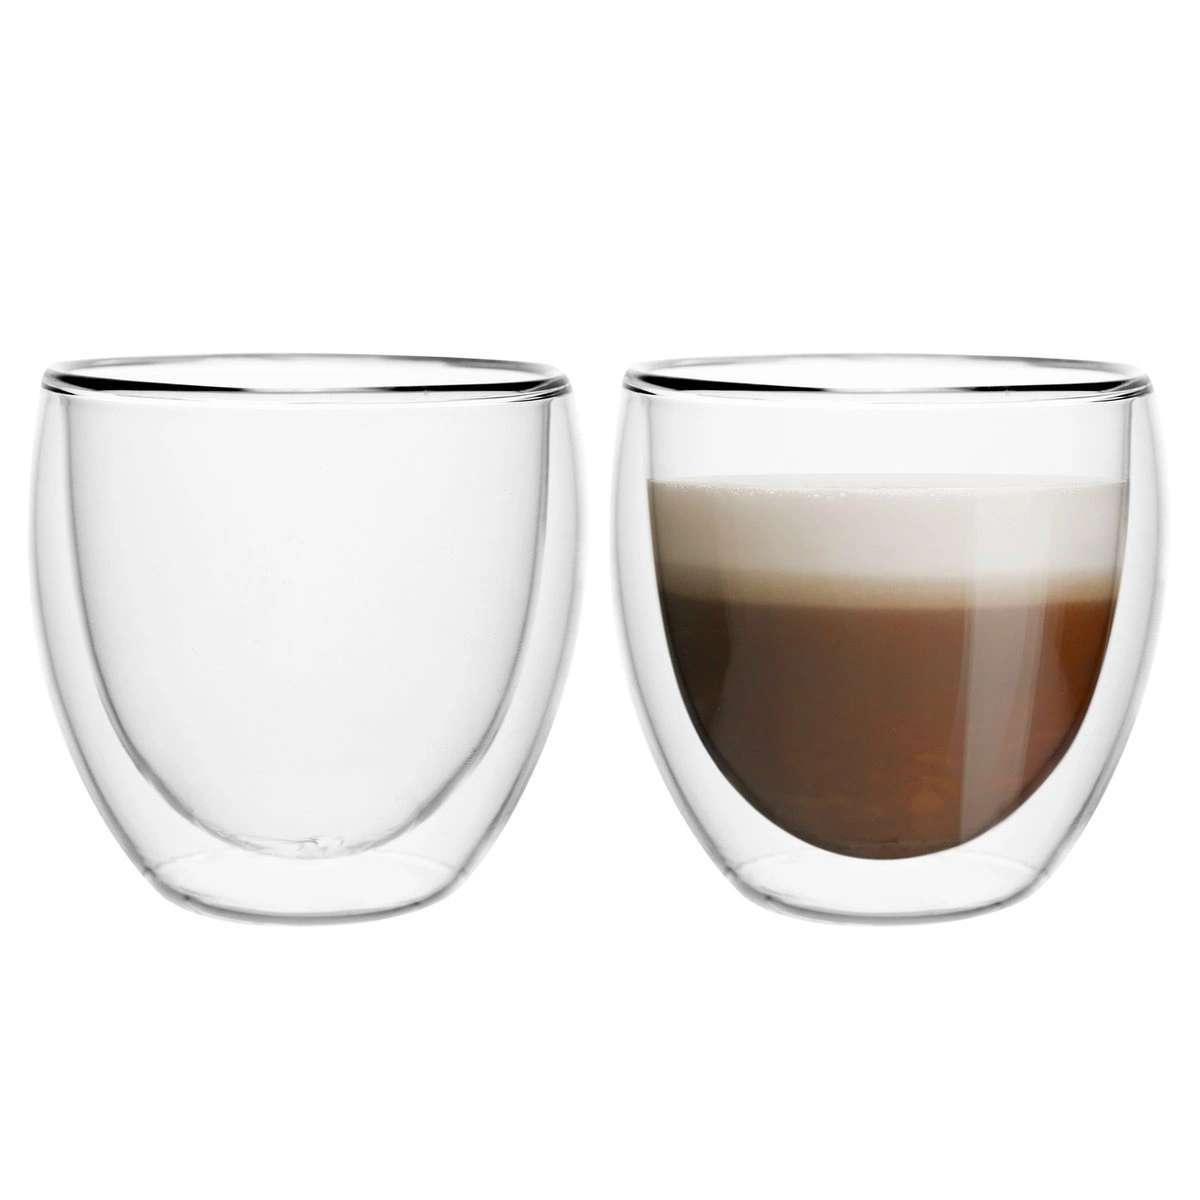 Zestaw kaw ziarnistych rzemieślnicza 2x250g Brazylia 50/50 + 2 szkl. espresso świąteczny  5 Full Screen